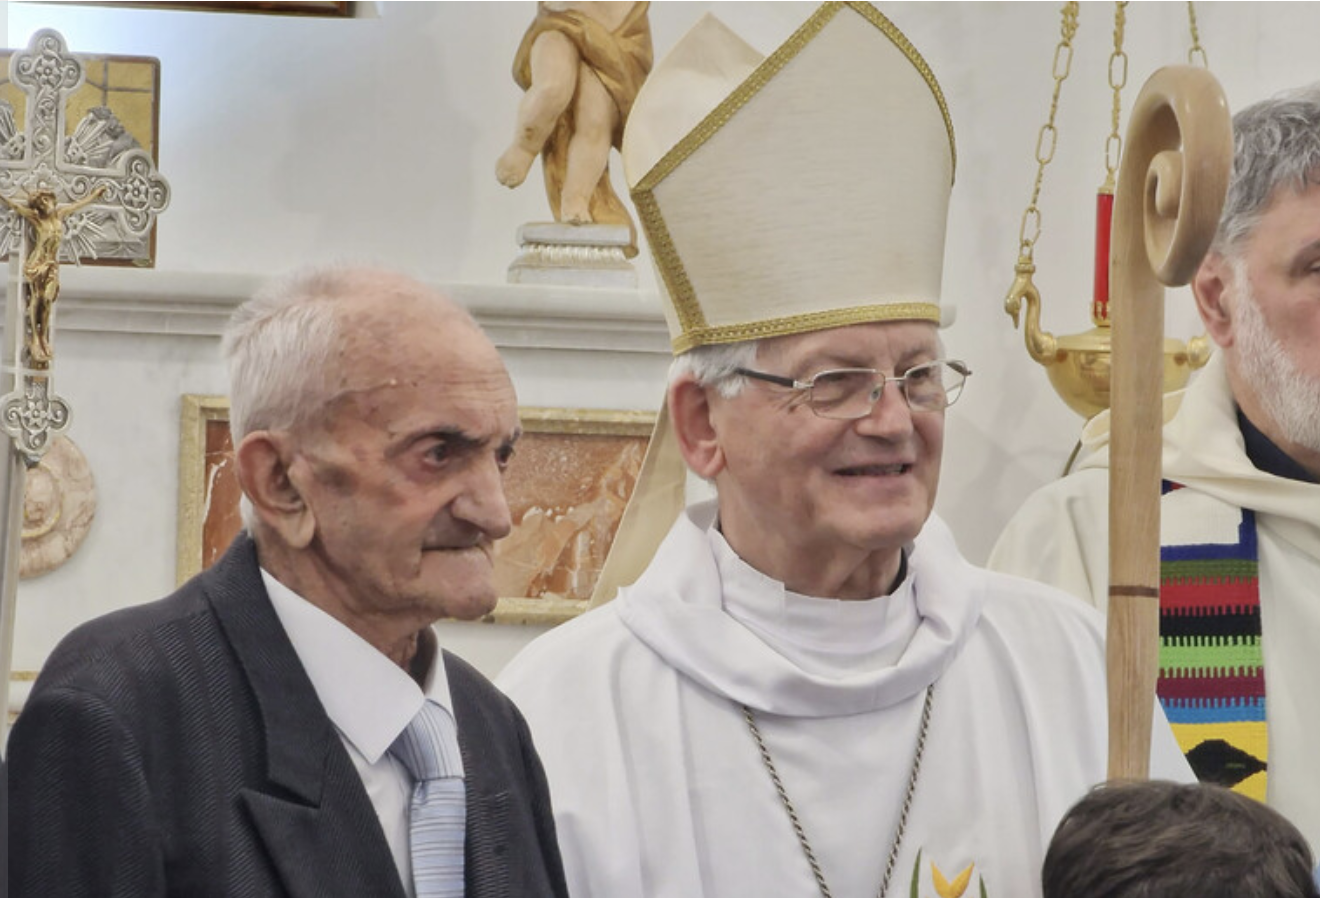 "Zio Peppe" festeggiato, compie 100 anni a Marettimo